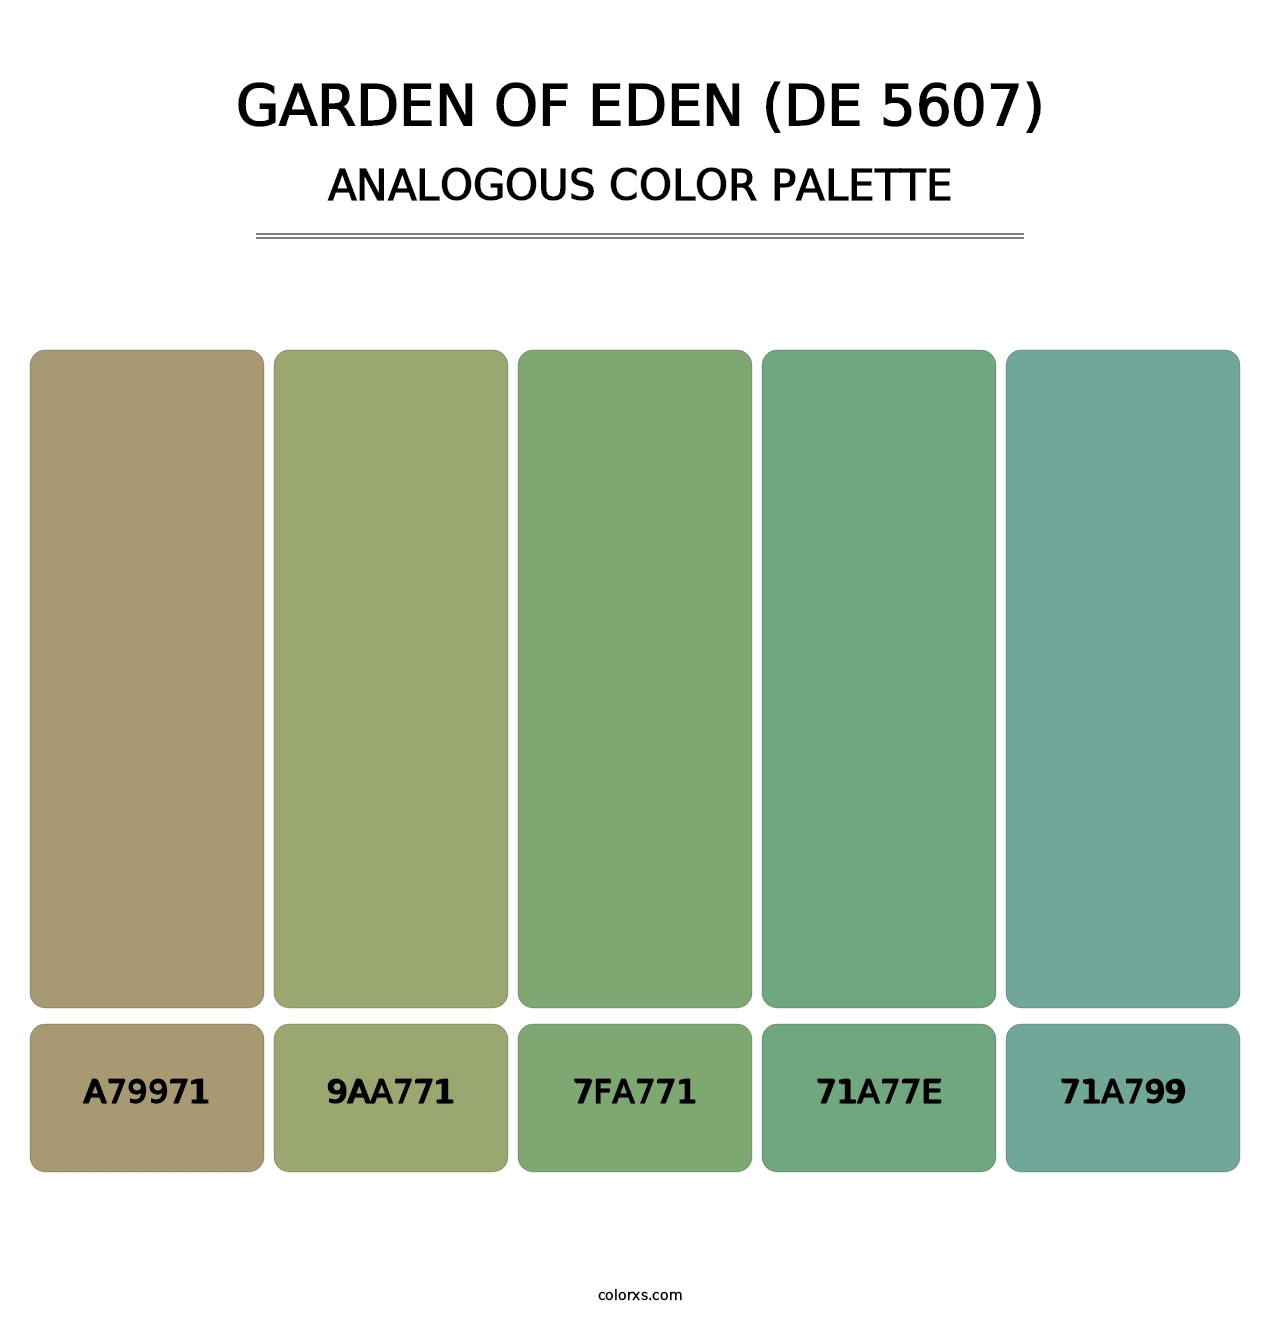 Garden of Eden (DE 5607) - Analogous Color Palette